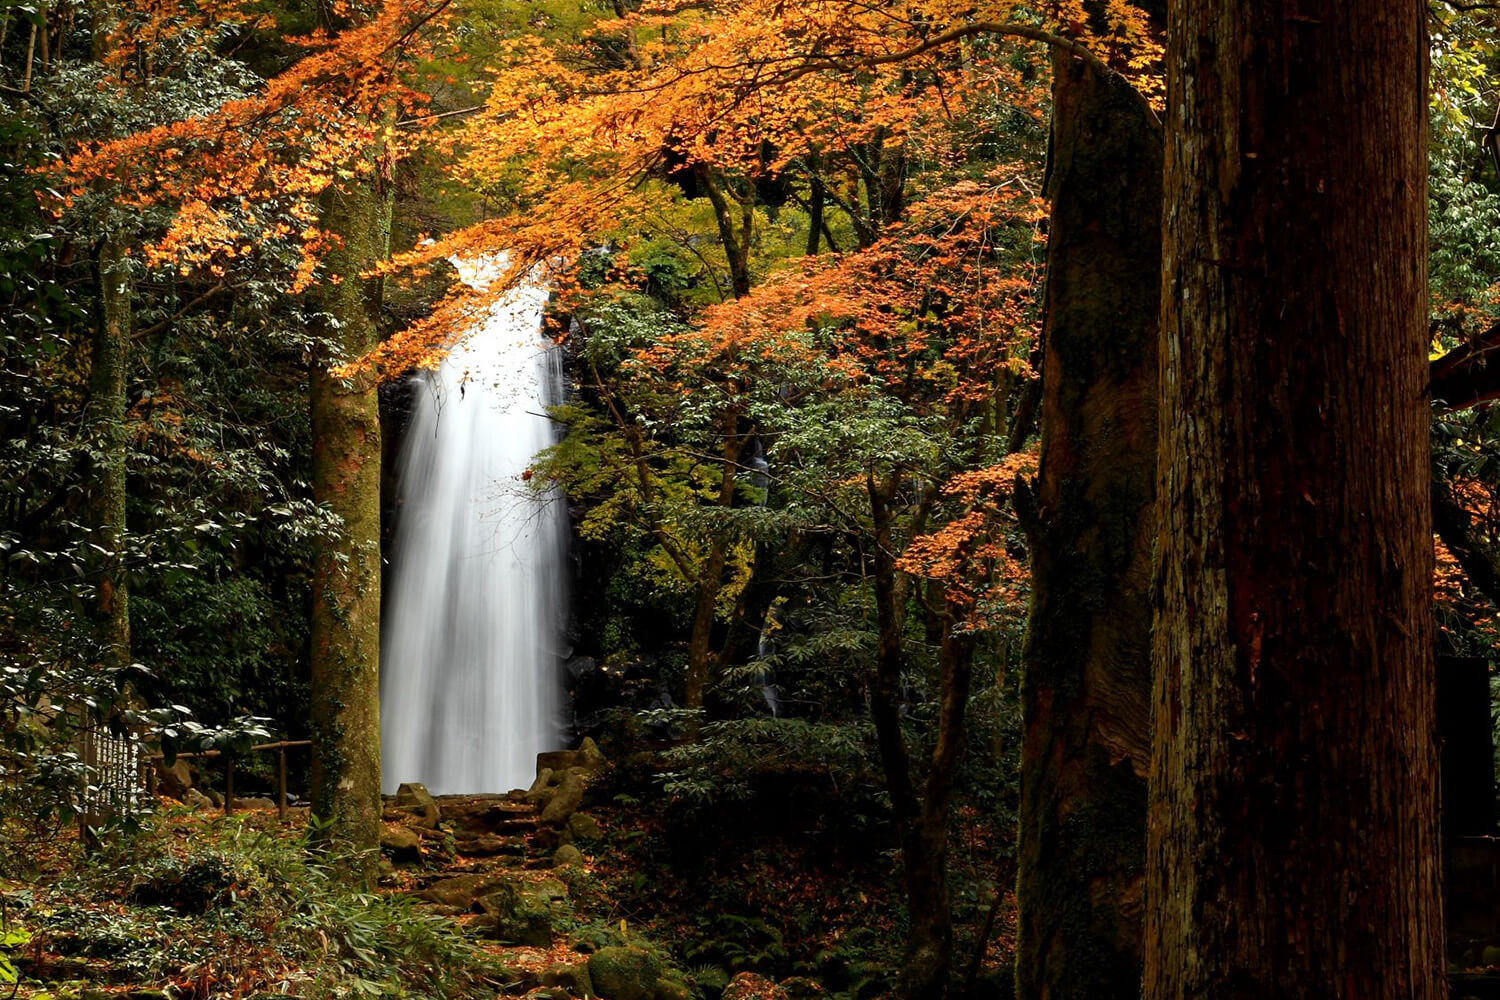 苔に包まれた静かな森の中に、美しい滝が現れる